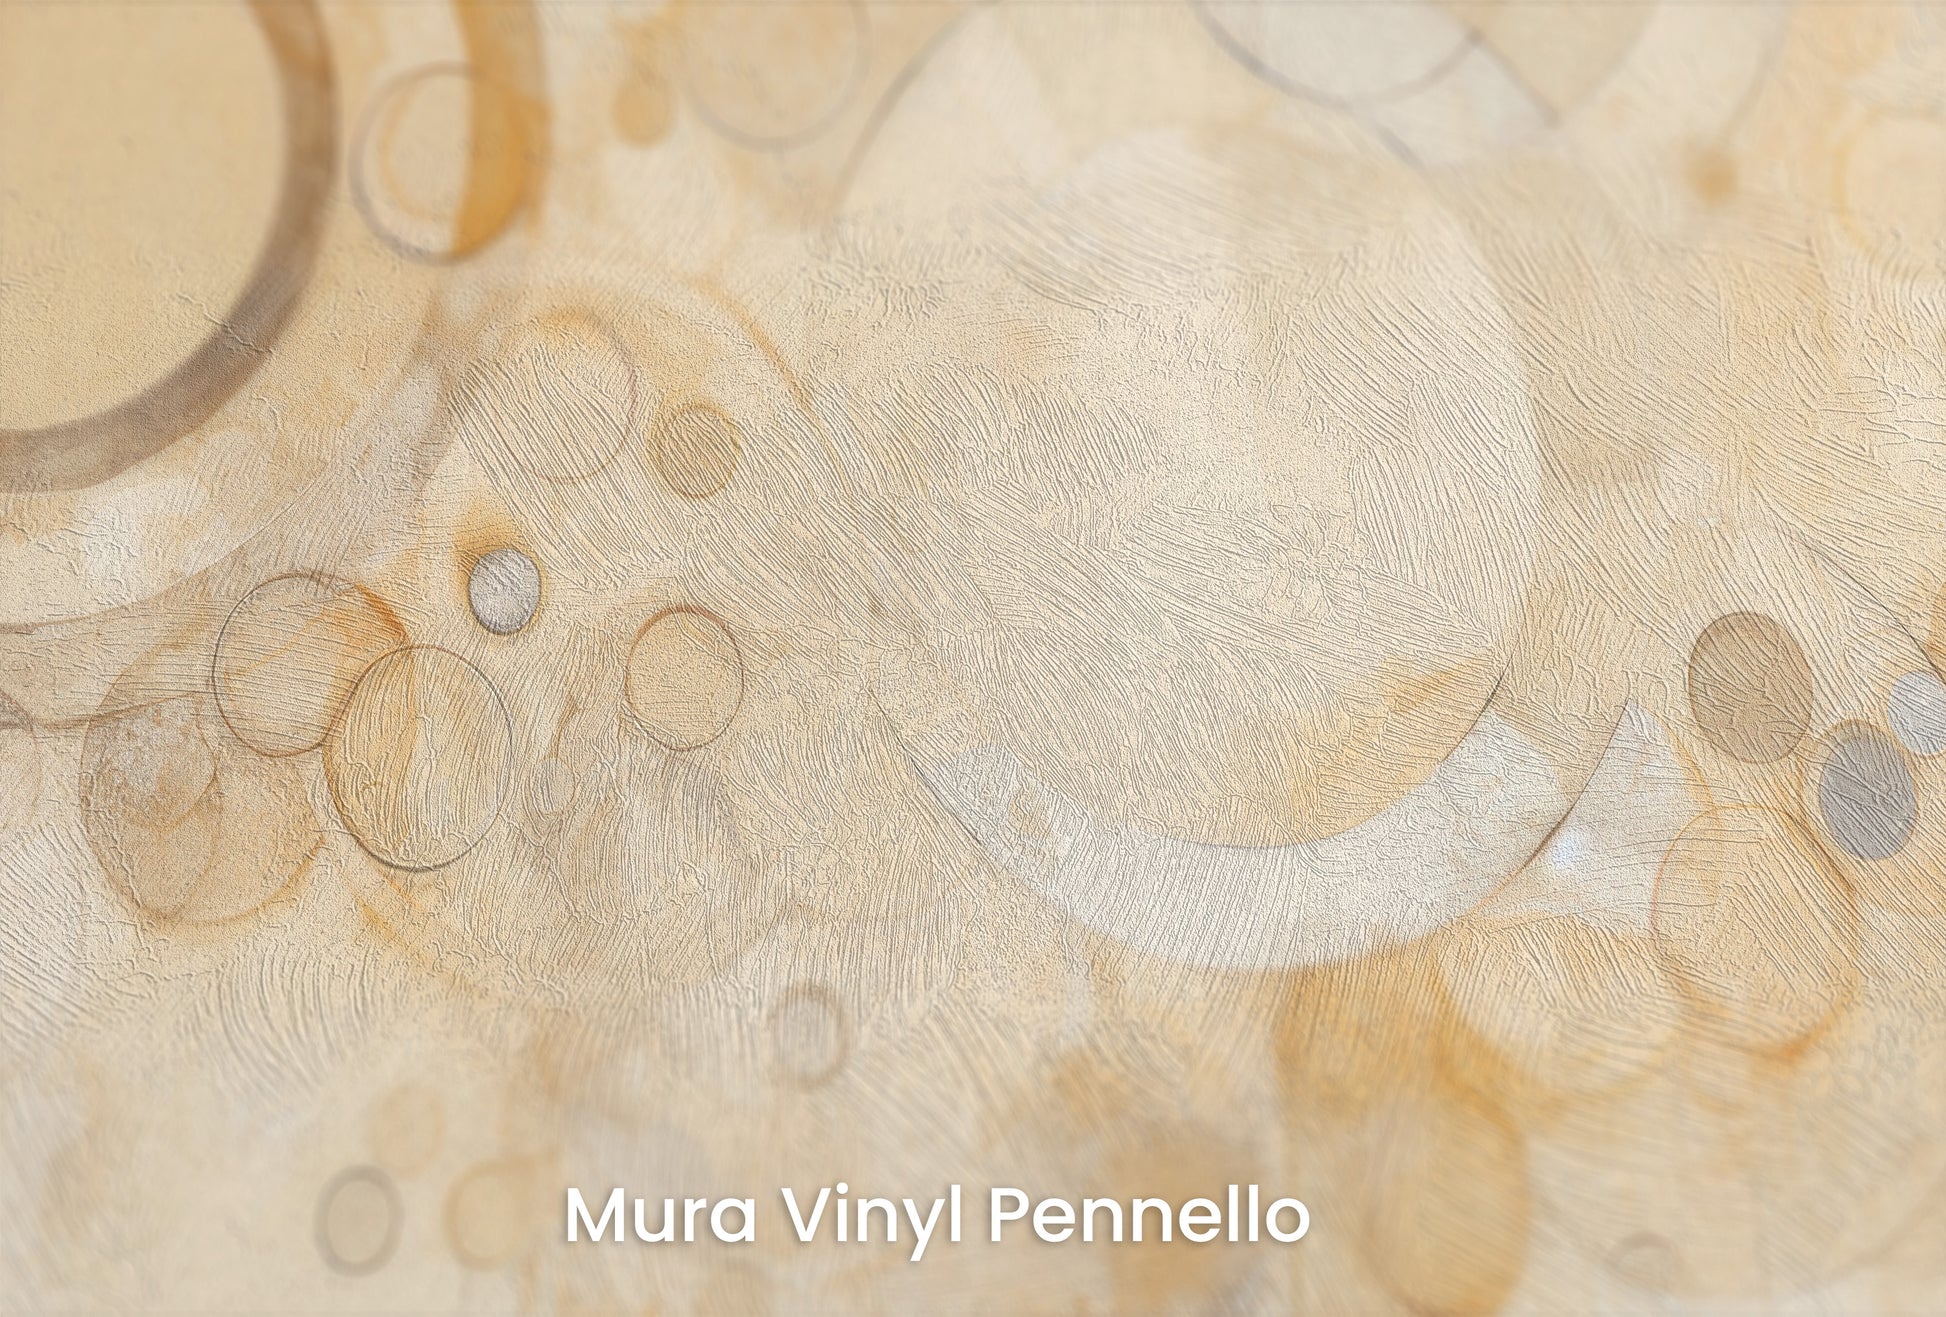 Zbliżenie na artystyczną fototapetę o nazwie AMBER ORBITAL FUSION na podłożu Mura Vinyl Pennello - faktura pociągnięć pędzla malarskiego.